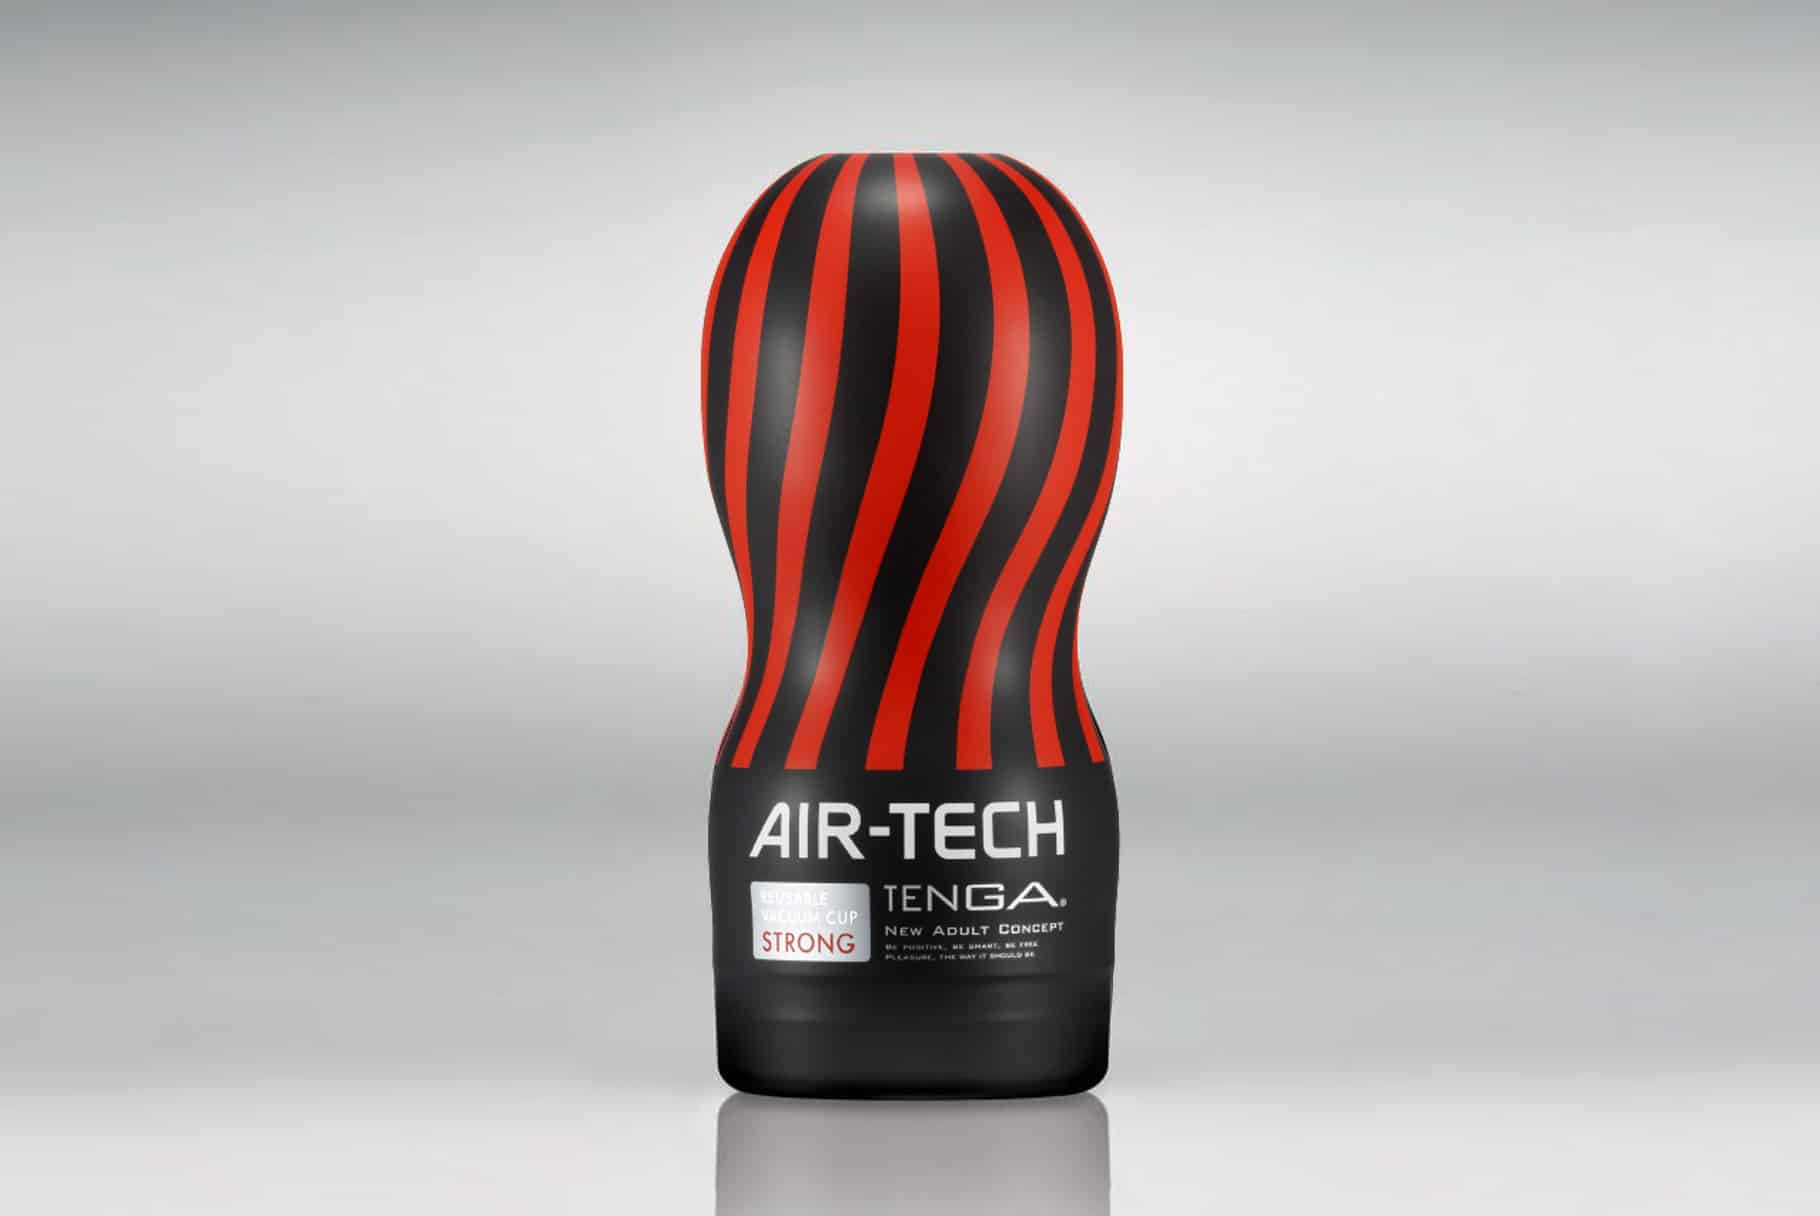 Tenga Air-Tech kompaktowy masturbator dobry na początek | Recenzja